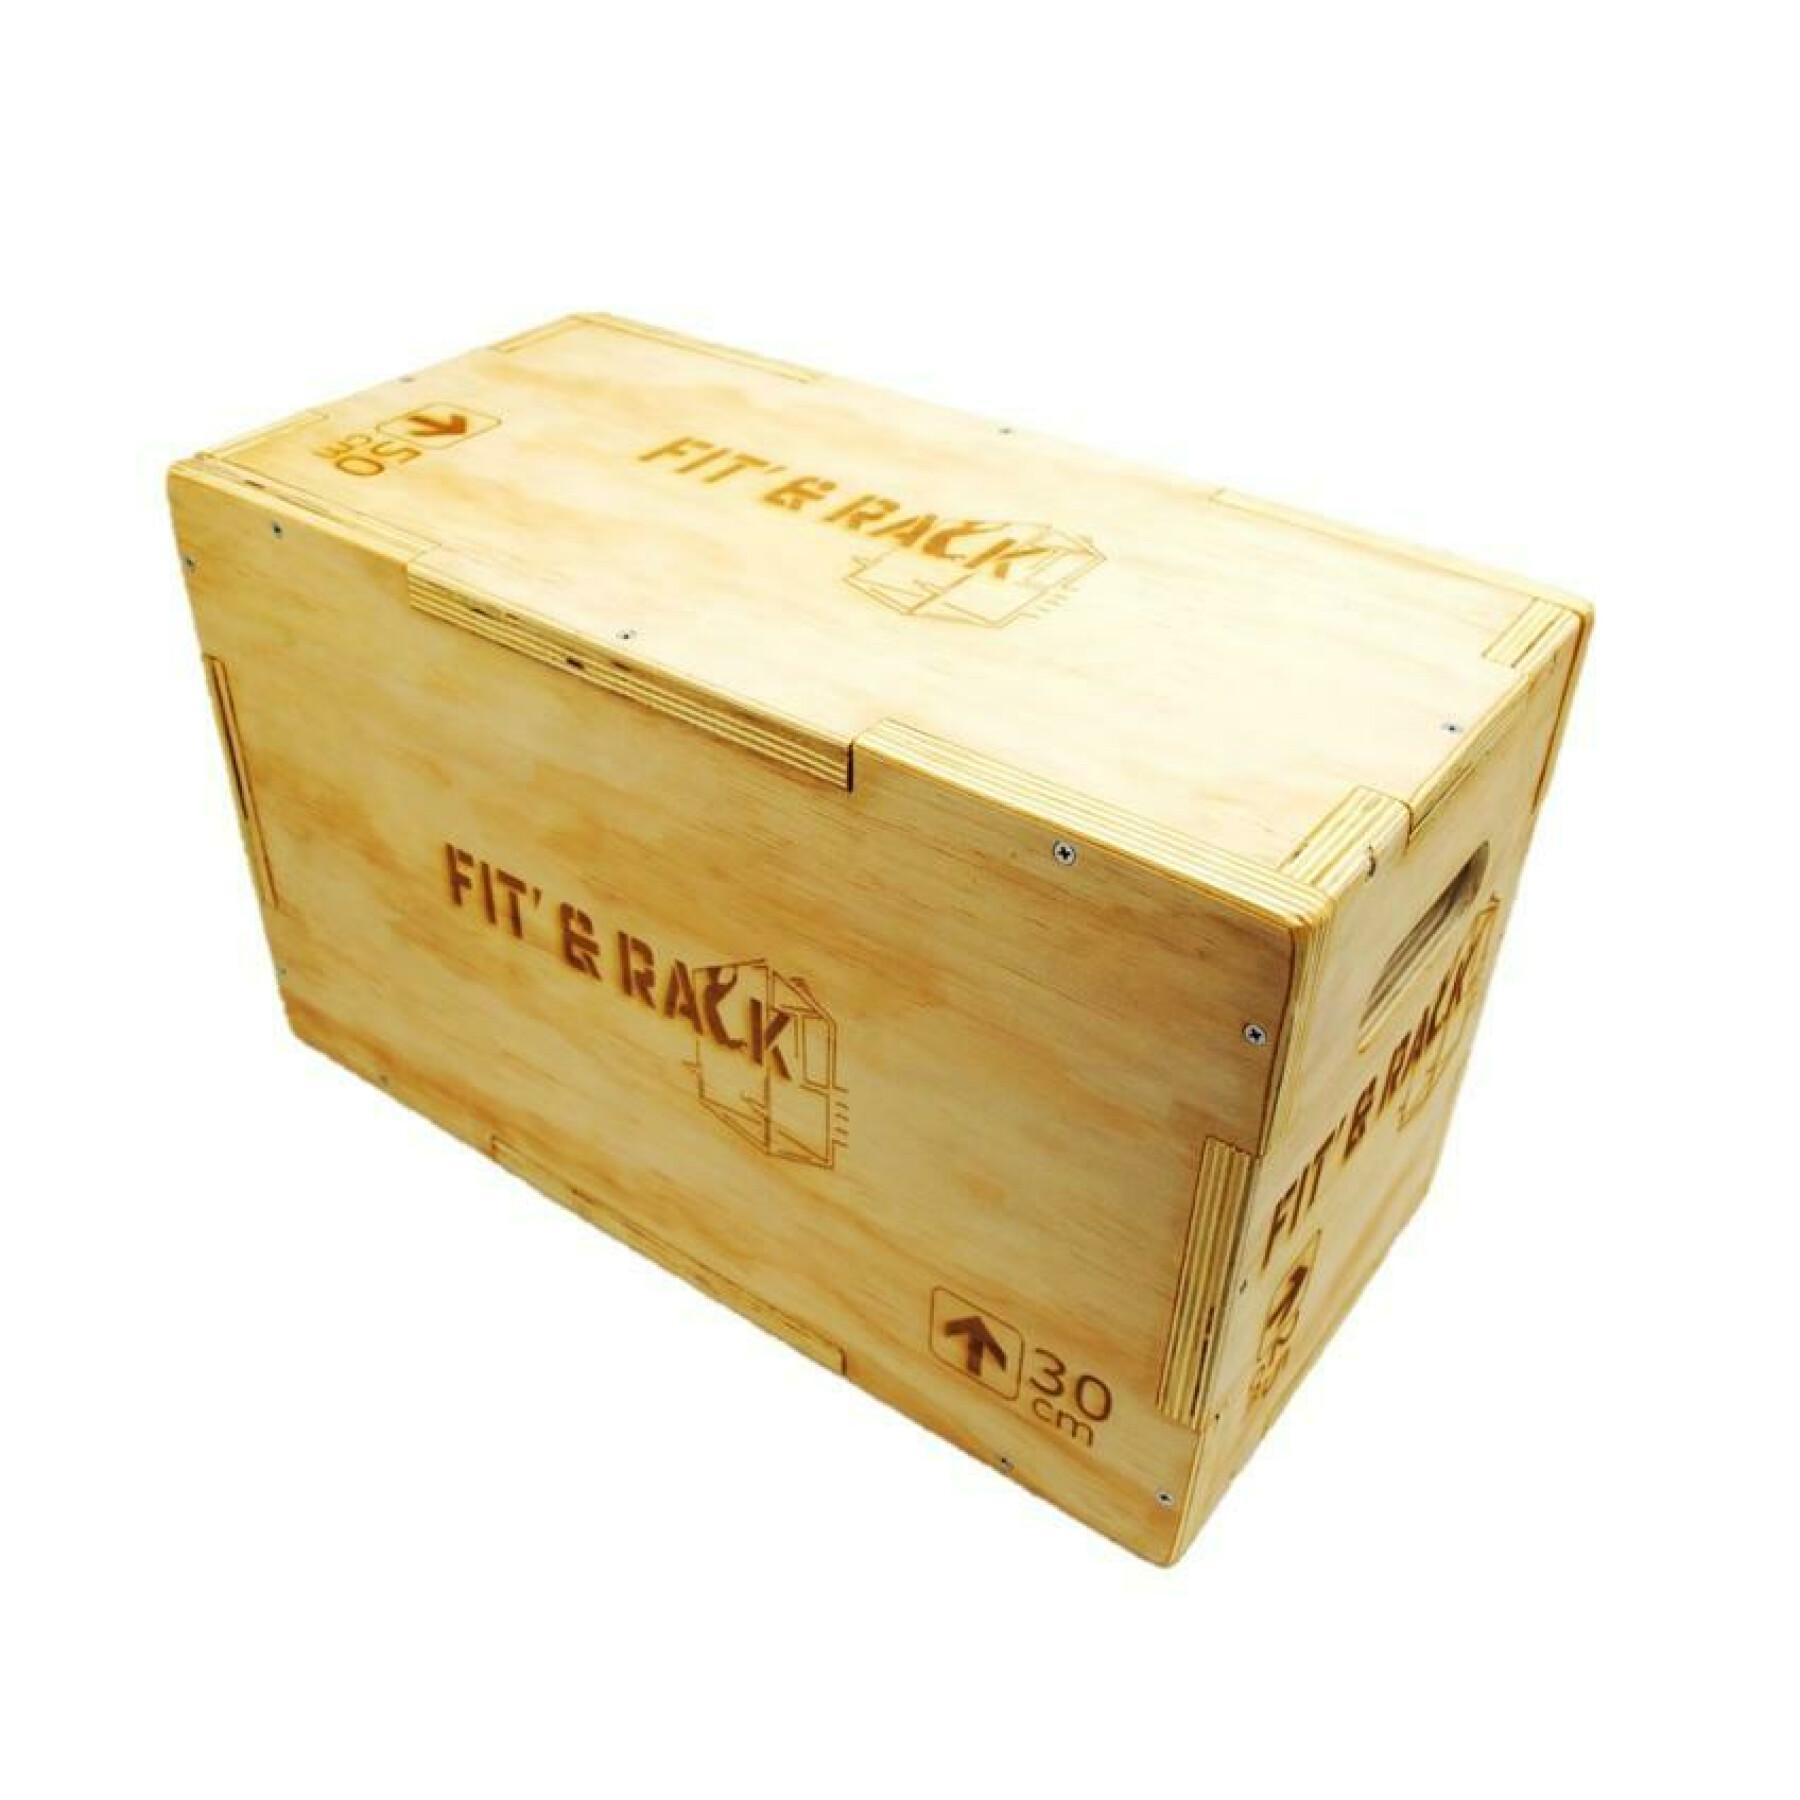 Salto de caja de madera Fit & Rack 25x30x50